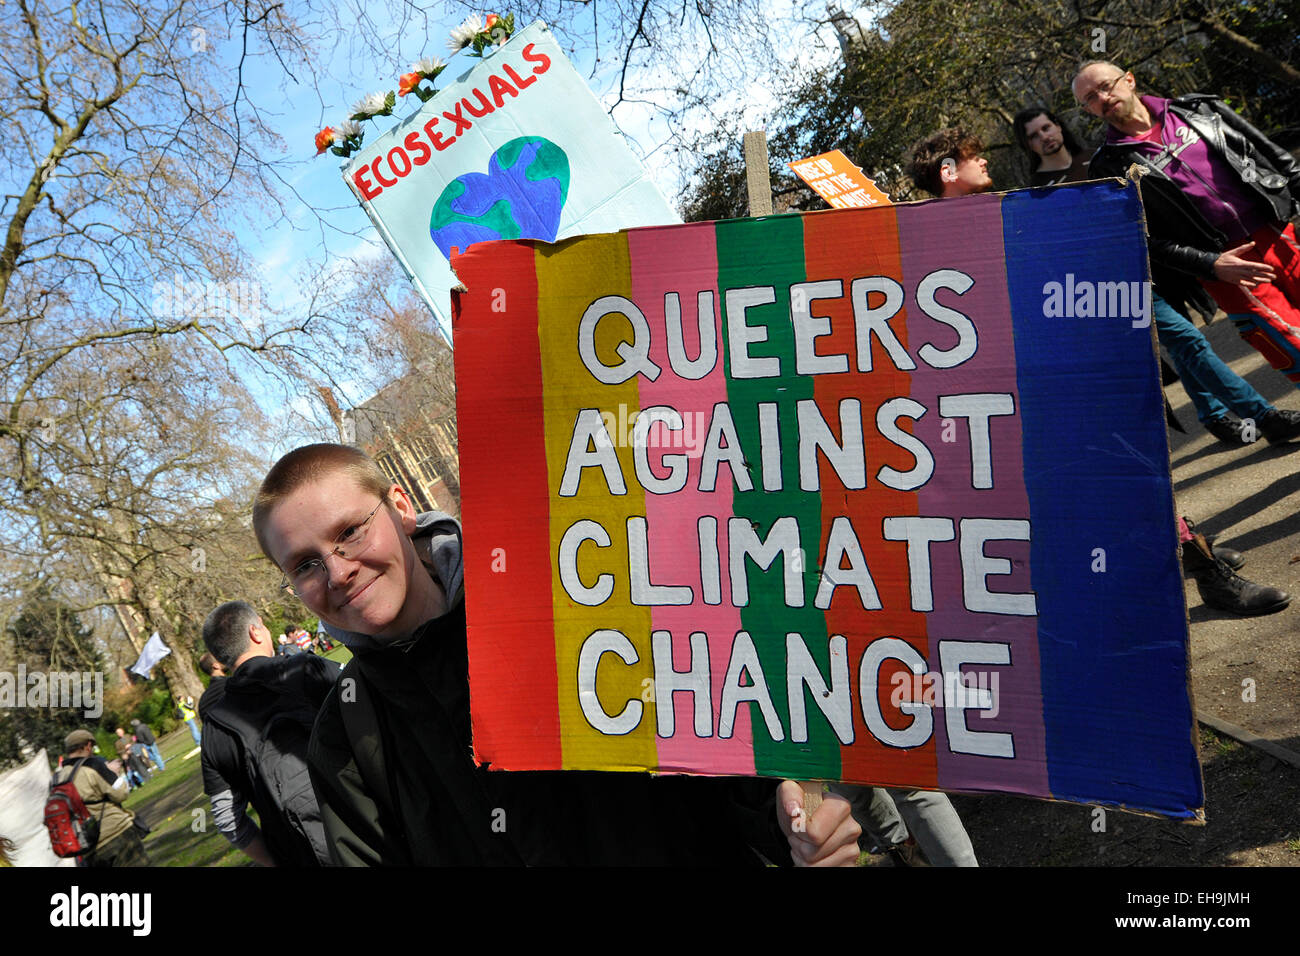 Los gays que participaban en una manifestación contra el cambio climático. Foto de stock